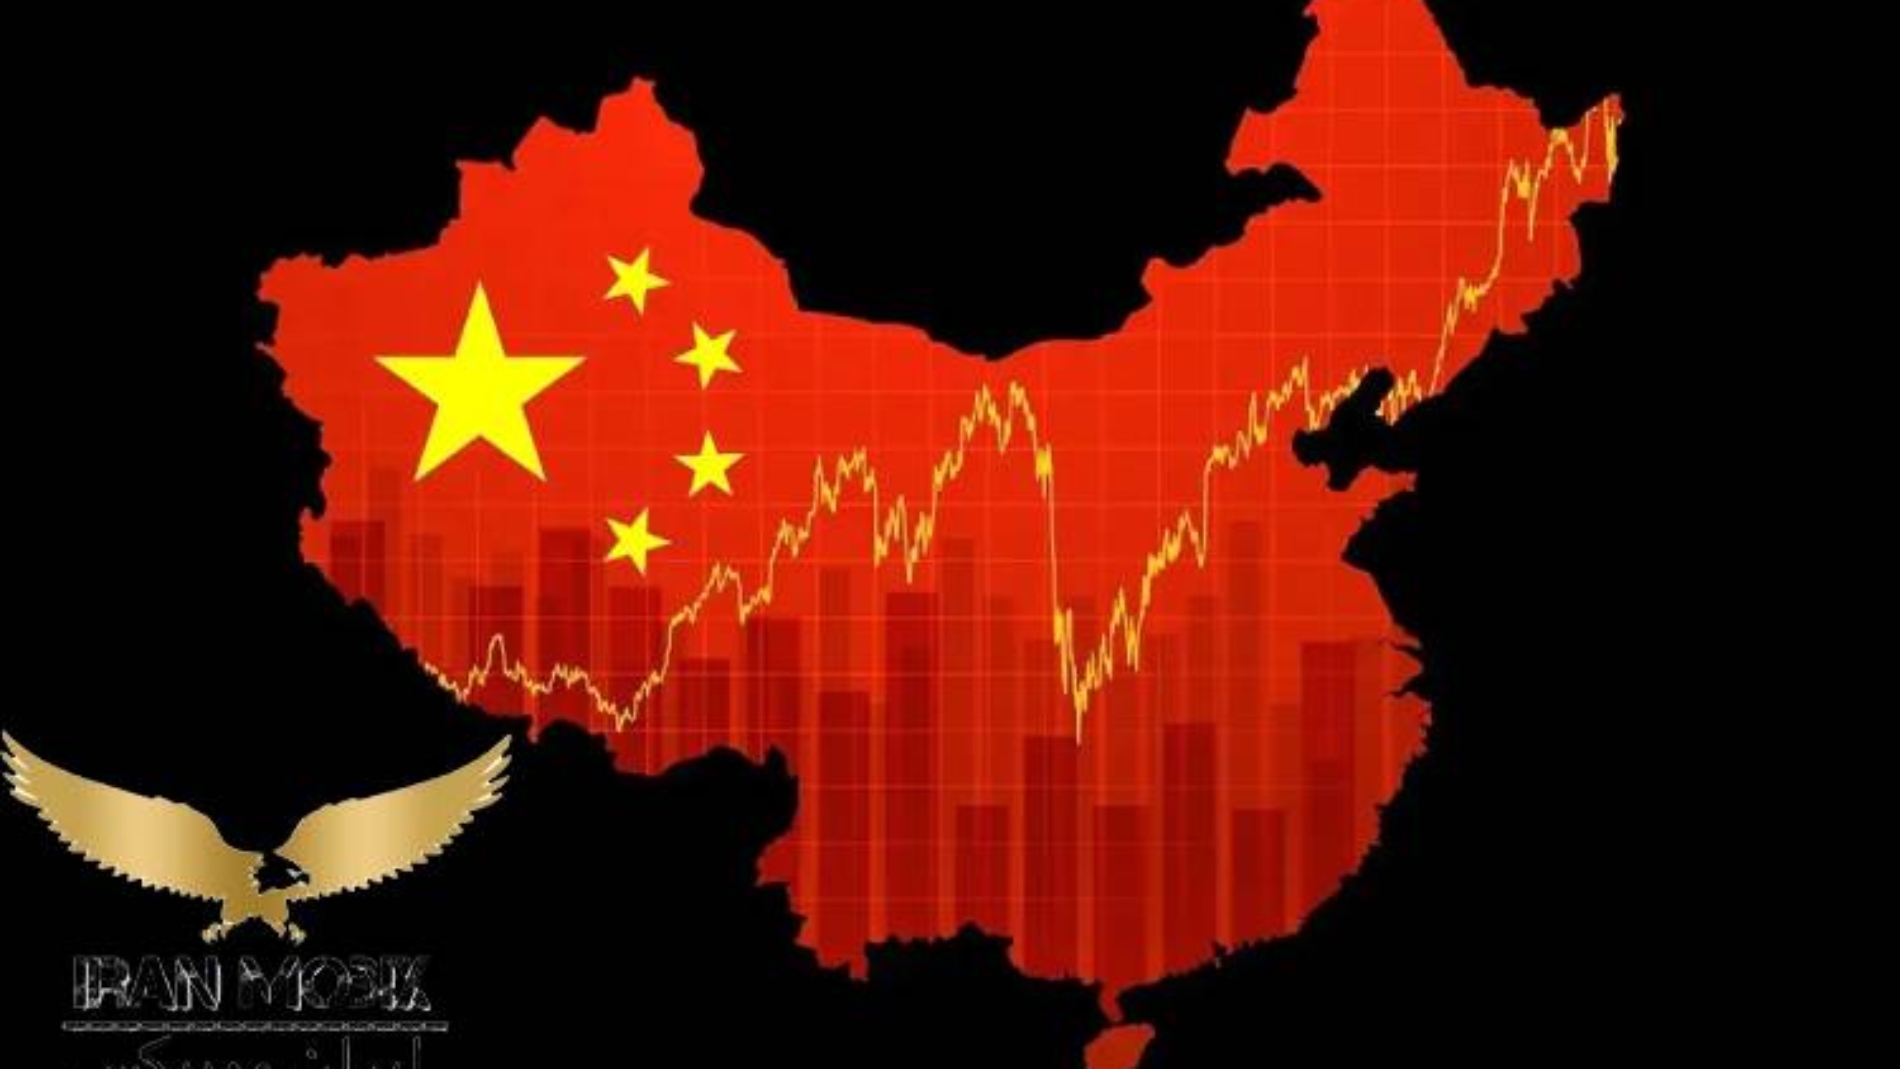 انواع روش های سرمایه گذاری خارجی در چین